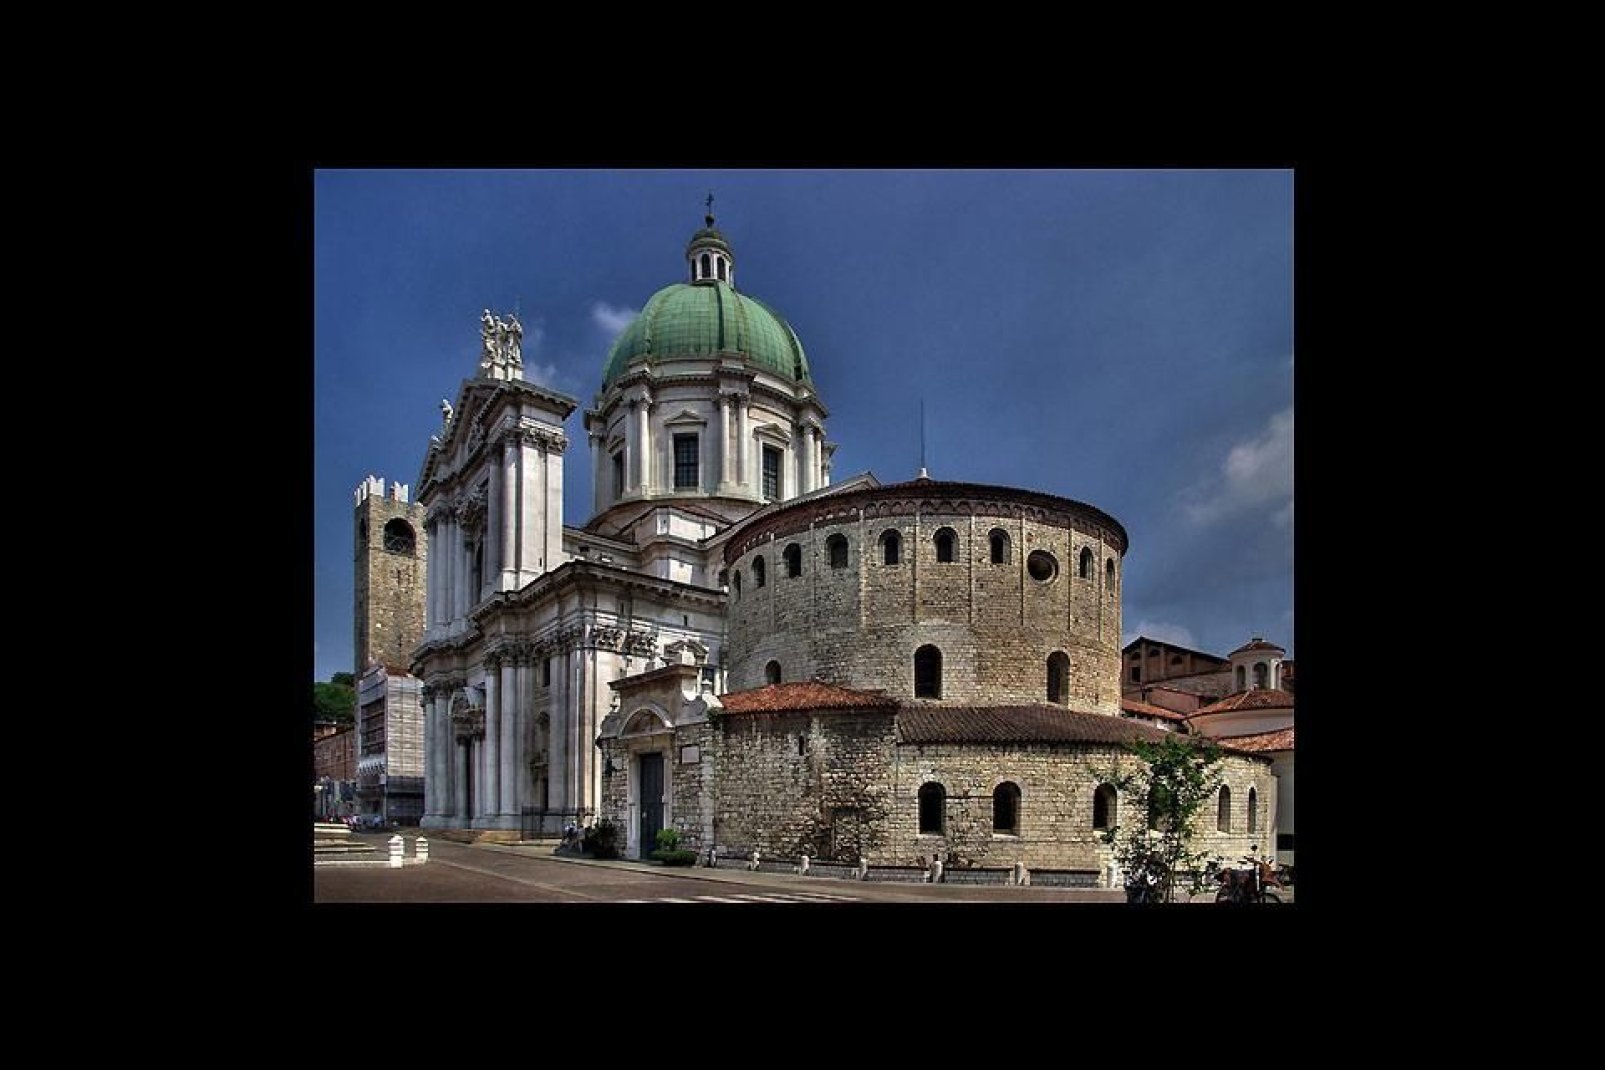 Der Alte Dom ist die Konkathedrale von Brescia. Seine Konstruktion wurde im 11. Jahrhundert über der alten Basilika begonnen, deren ursprüngliche romanische Baustruktur intakt geblieben ist.